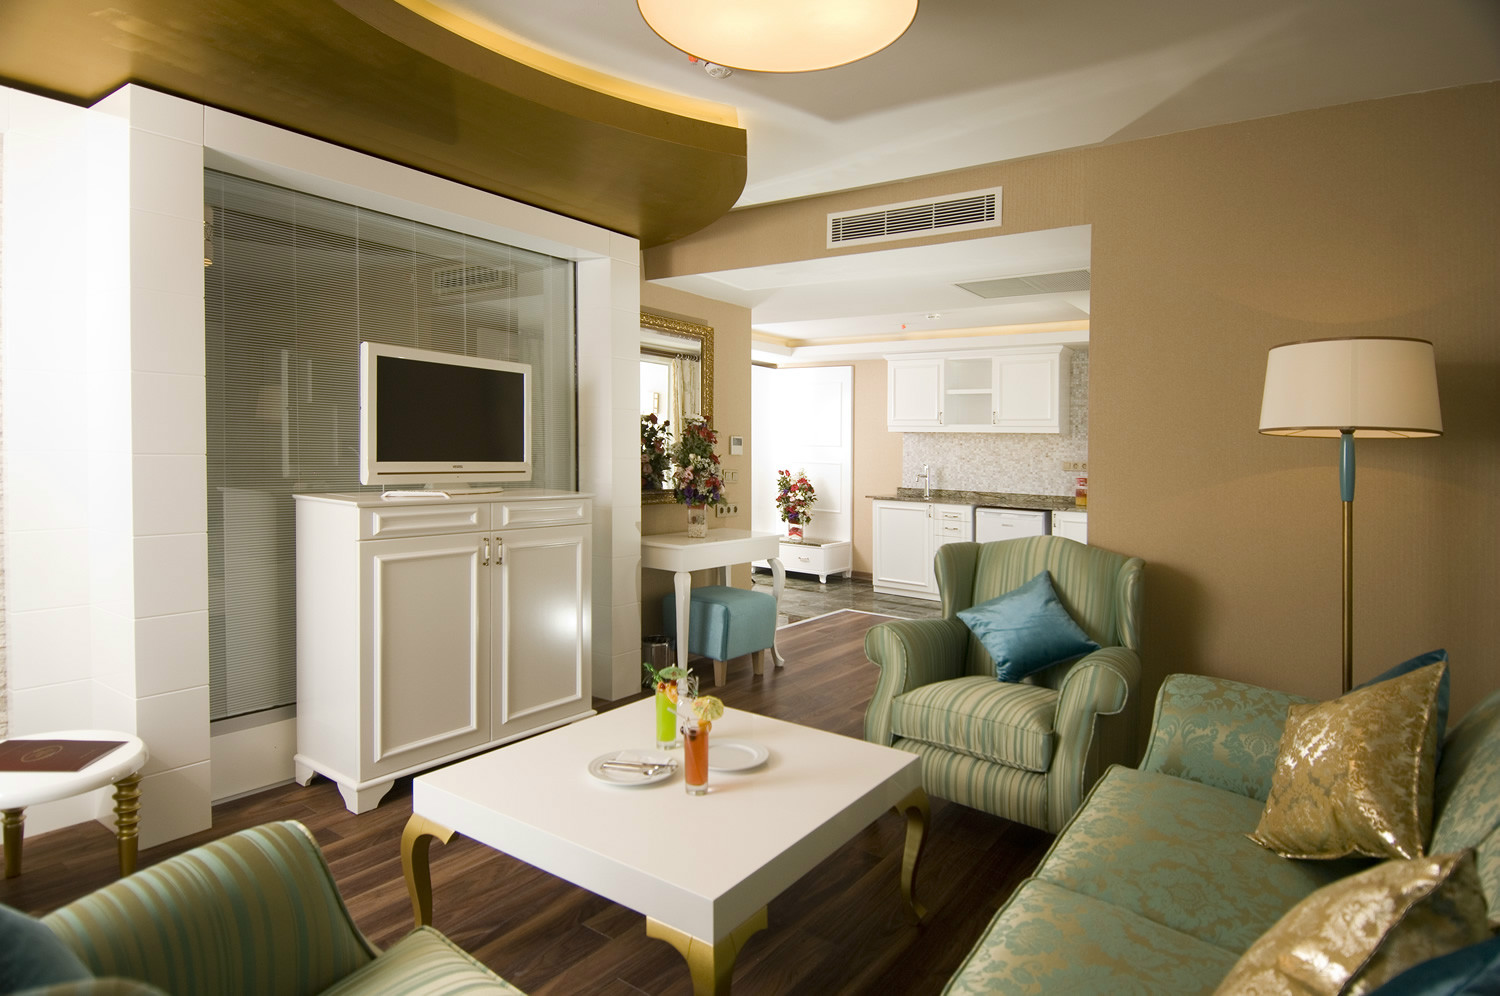 Adenya Hotel&Resort Oda İçin Görüntüsü